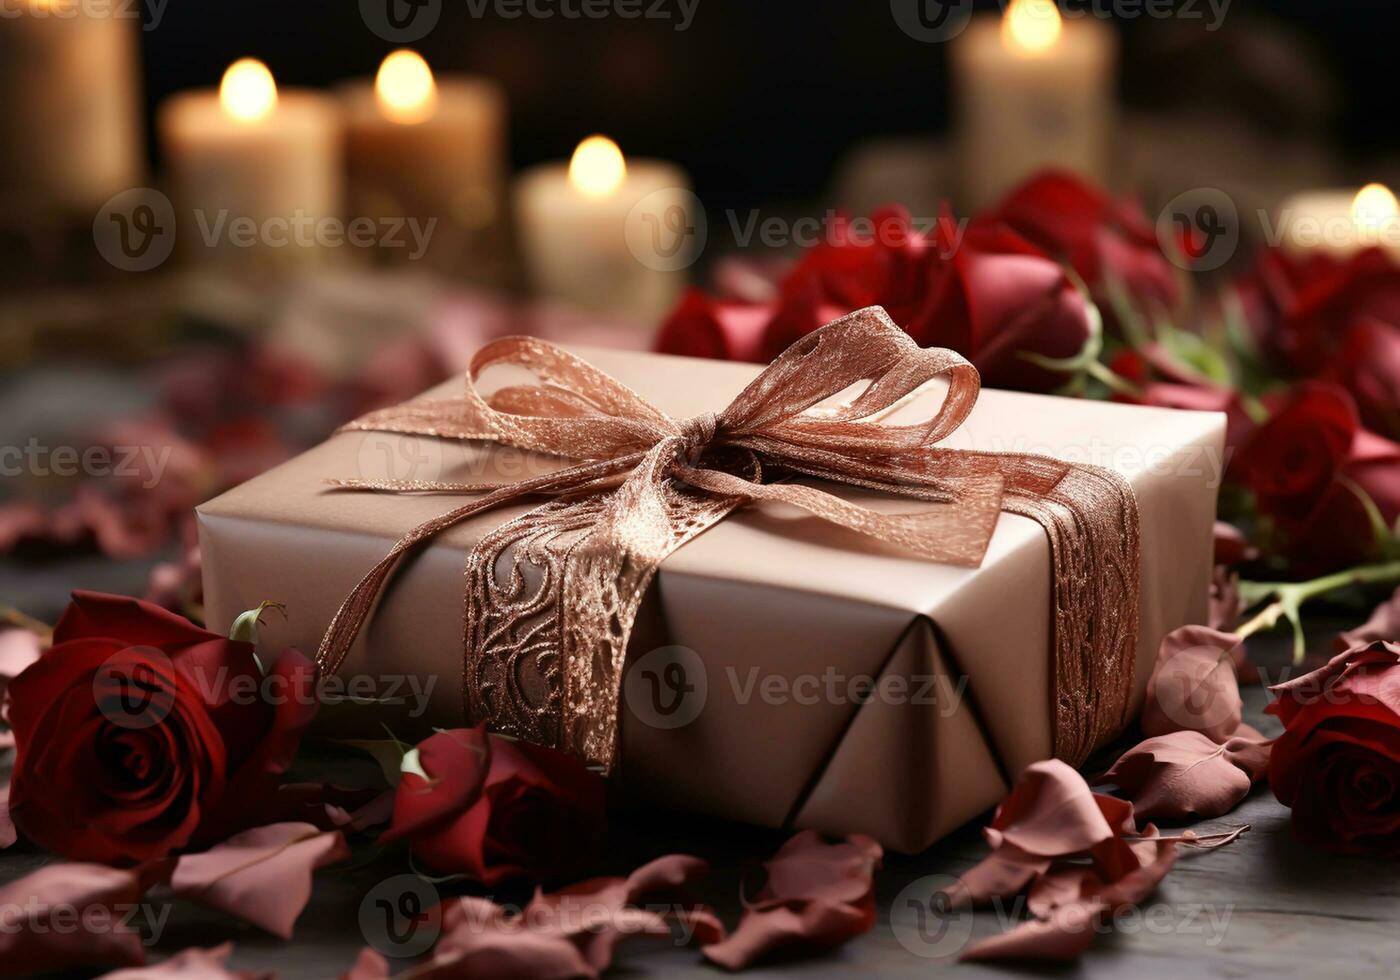 ai genererad romantisk bild av en gåva och torkades ro för inbjudan kort eller Övrig använder. valentine dag foto